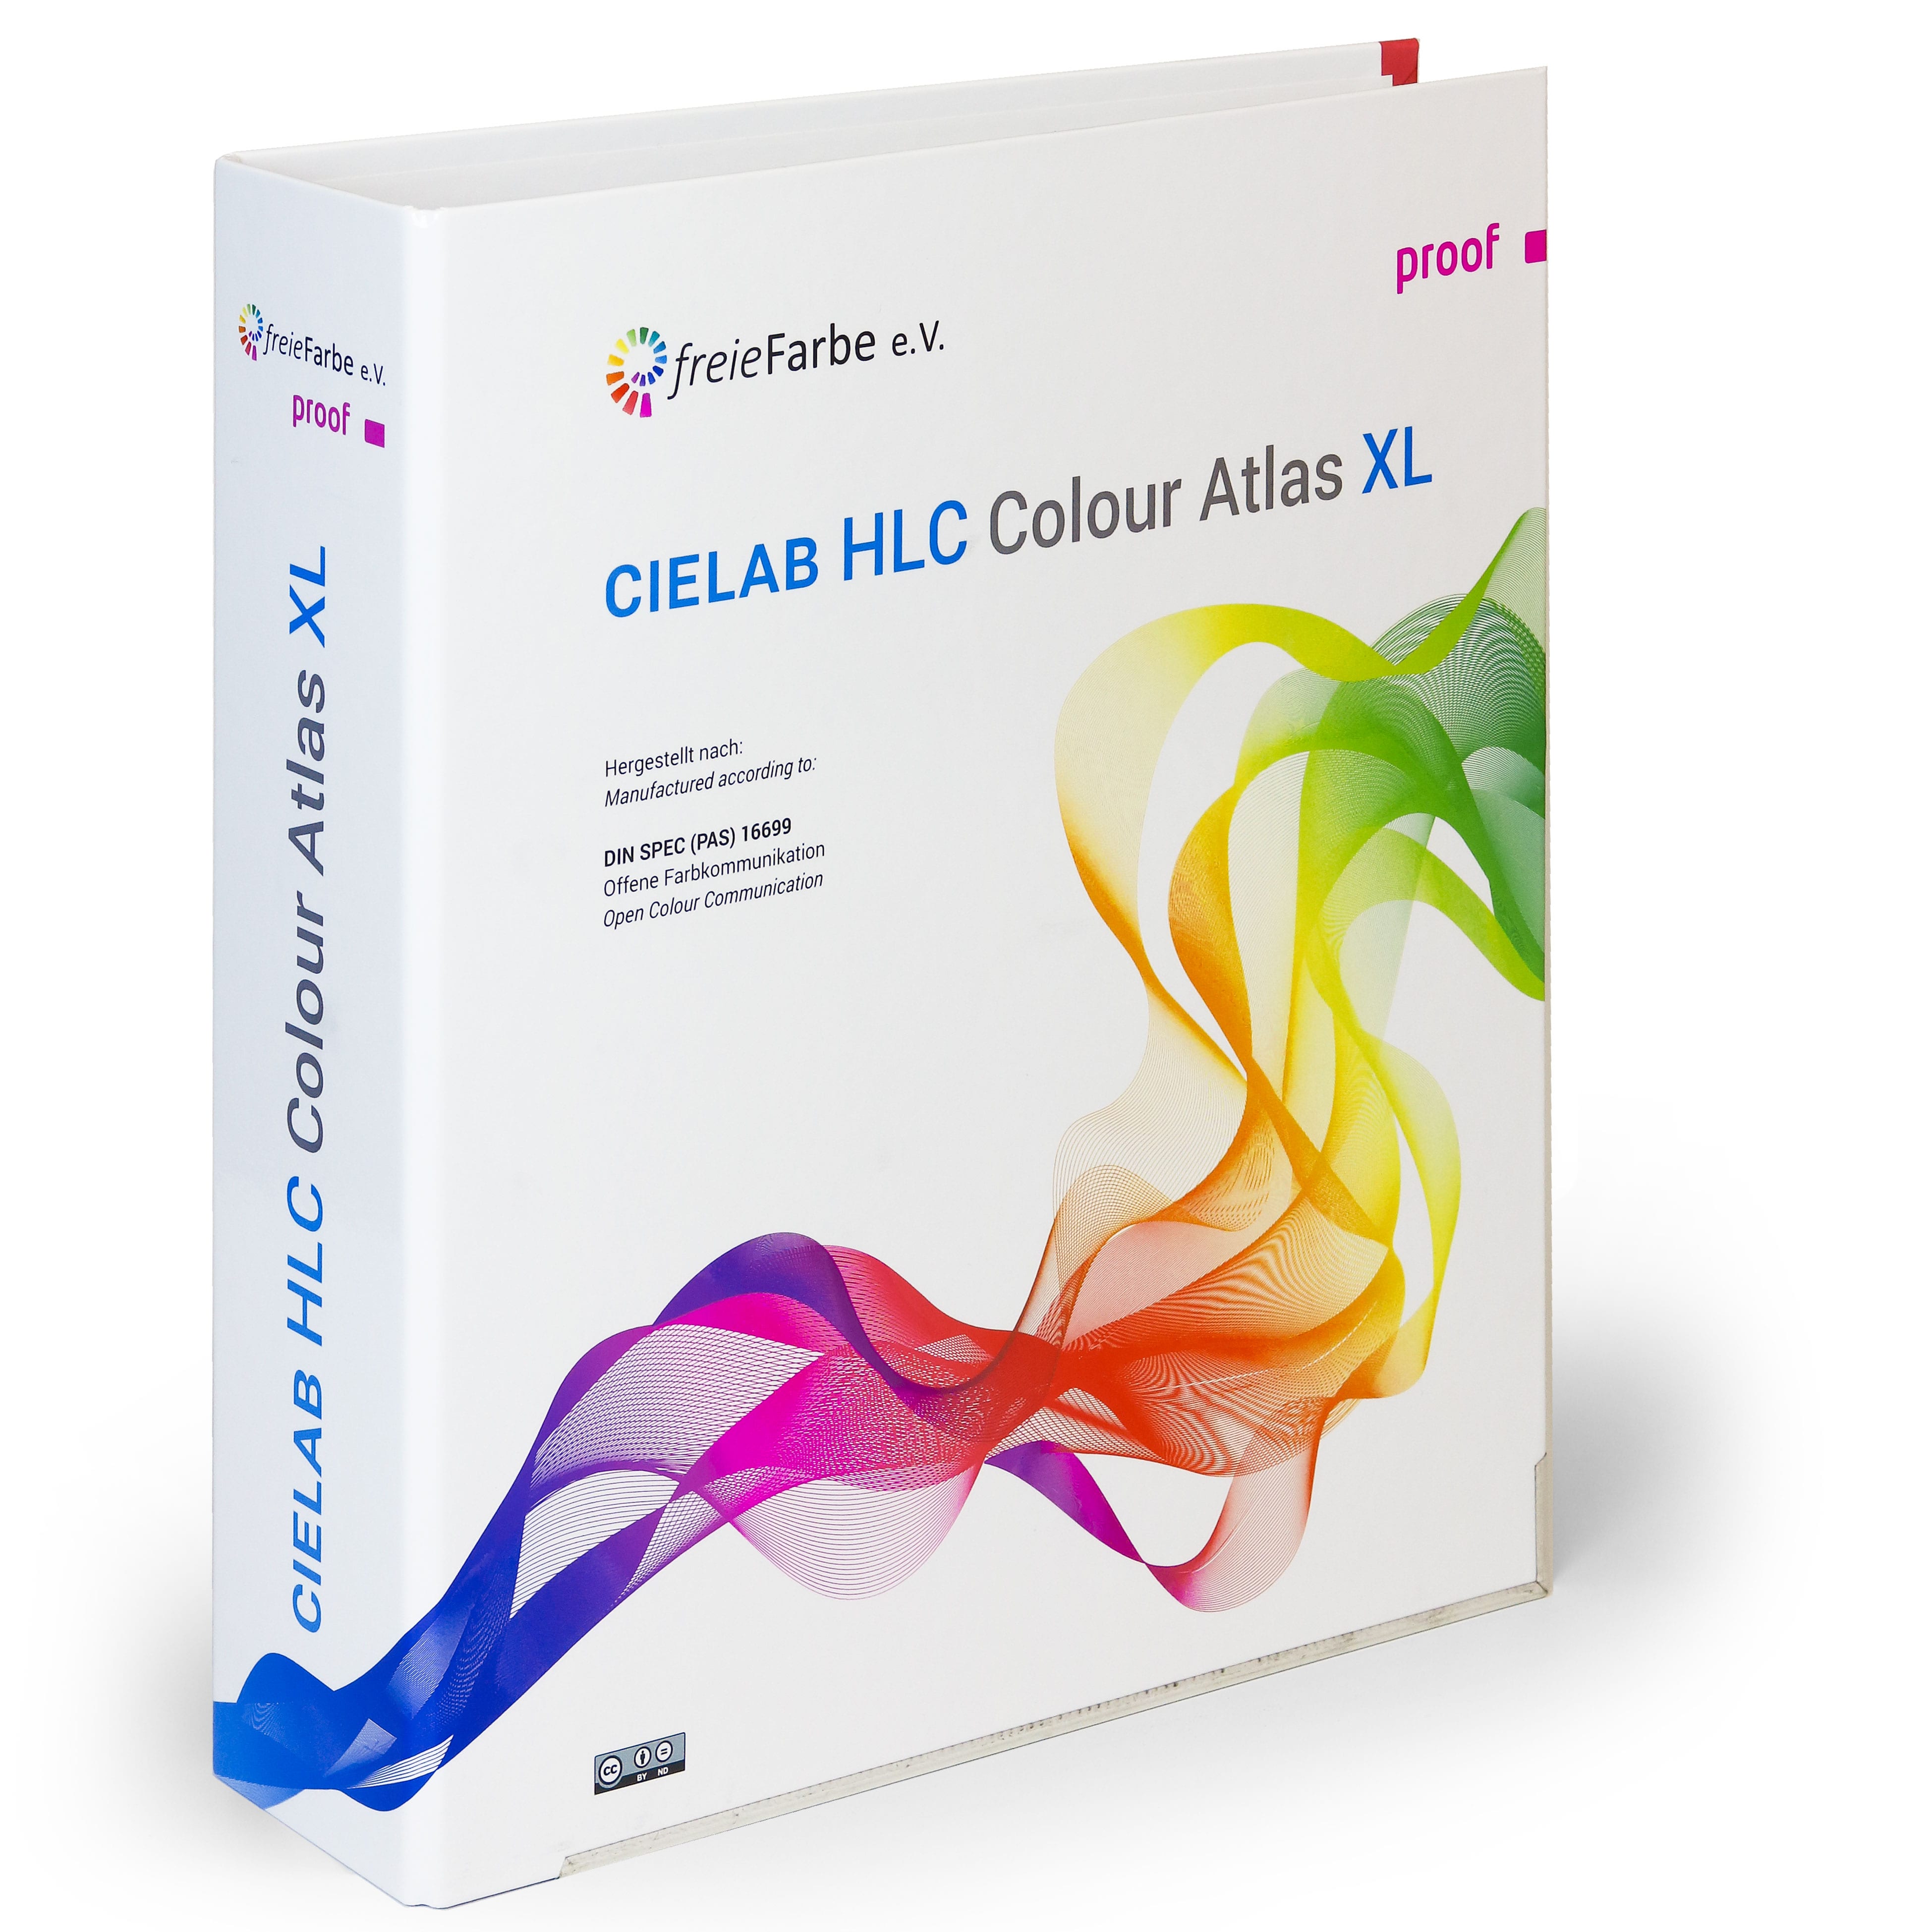 HLC spalvotas atlasas XL iš freieFarbe ir Proof GmbH